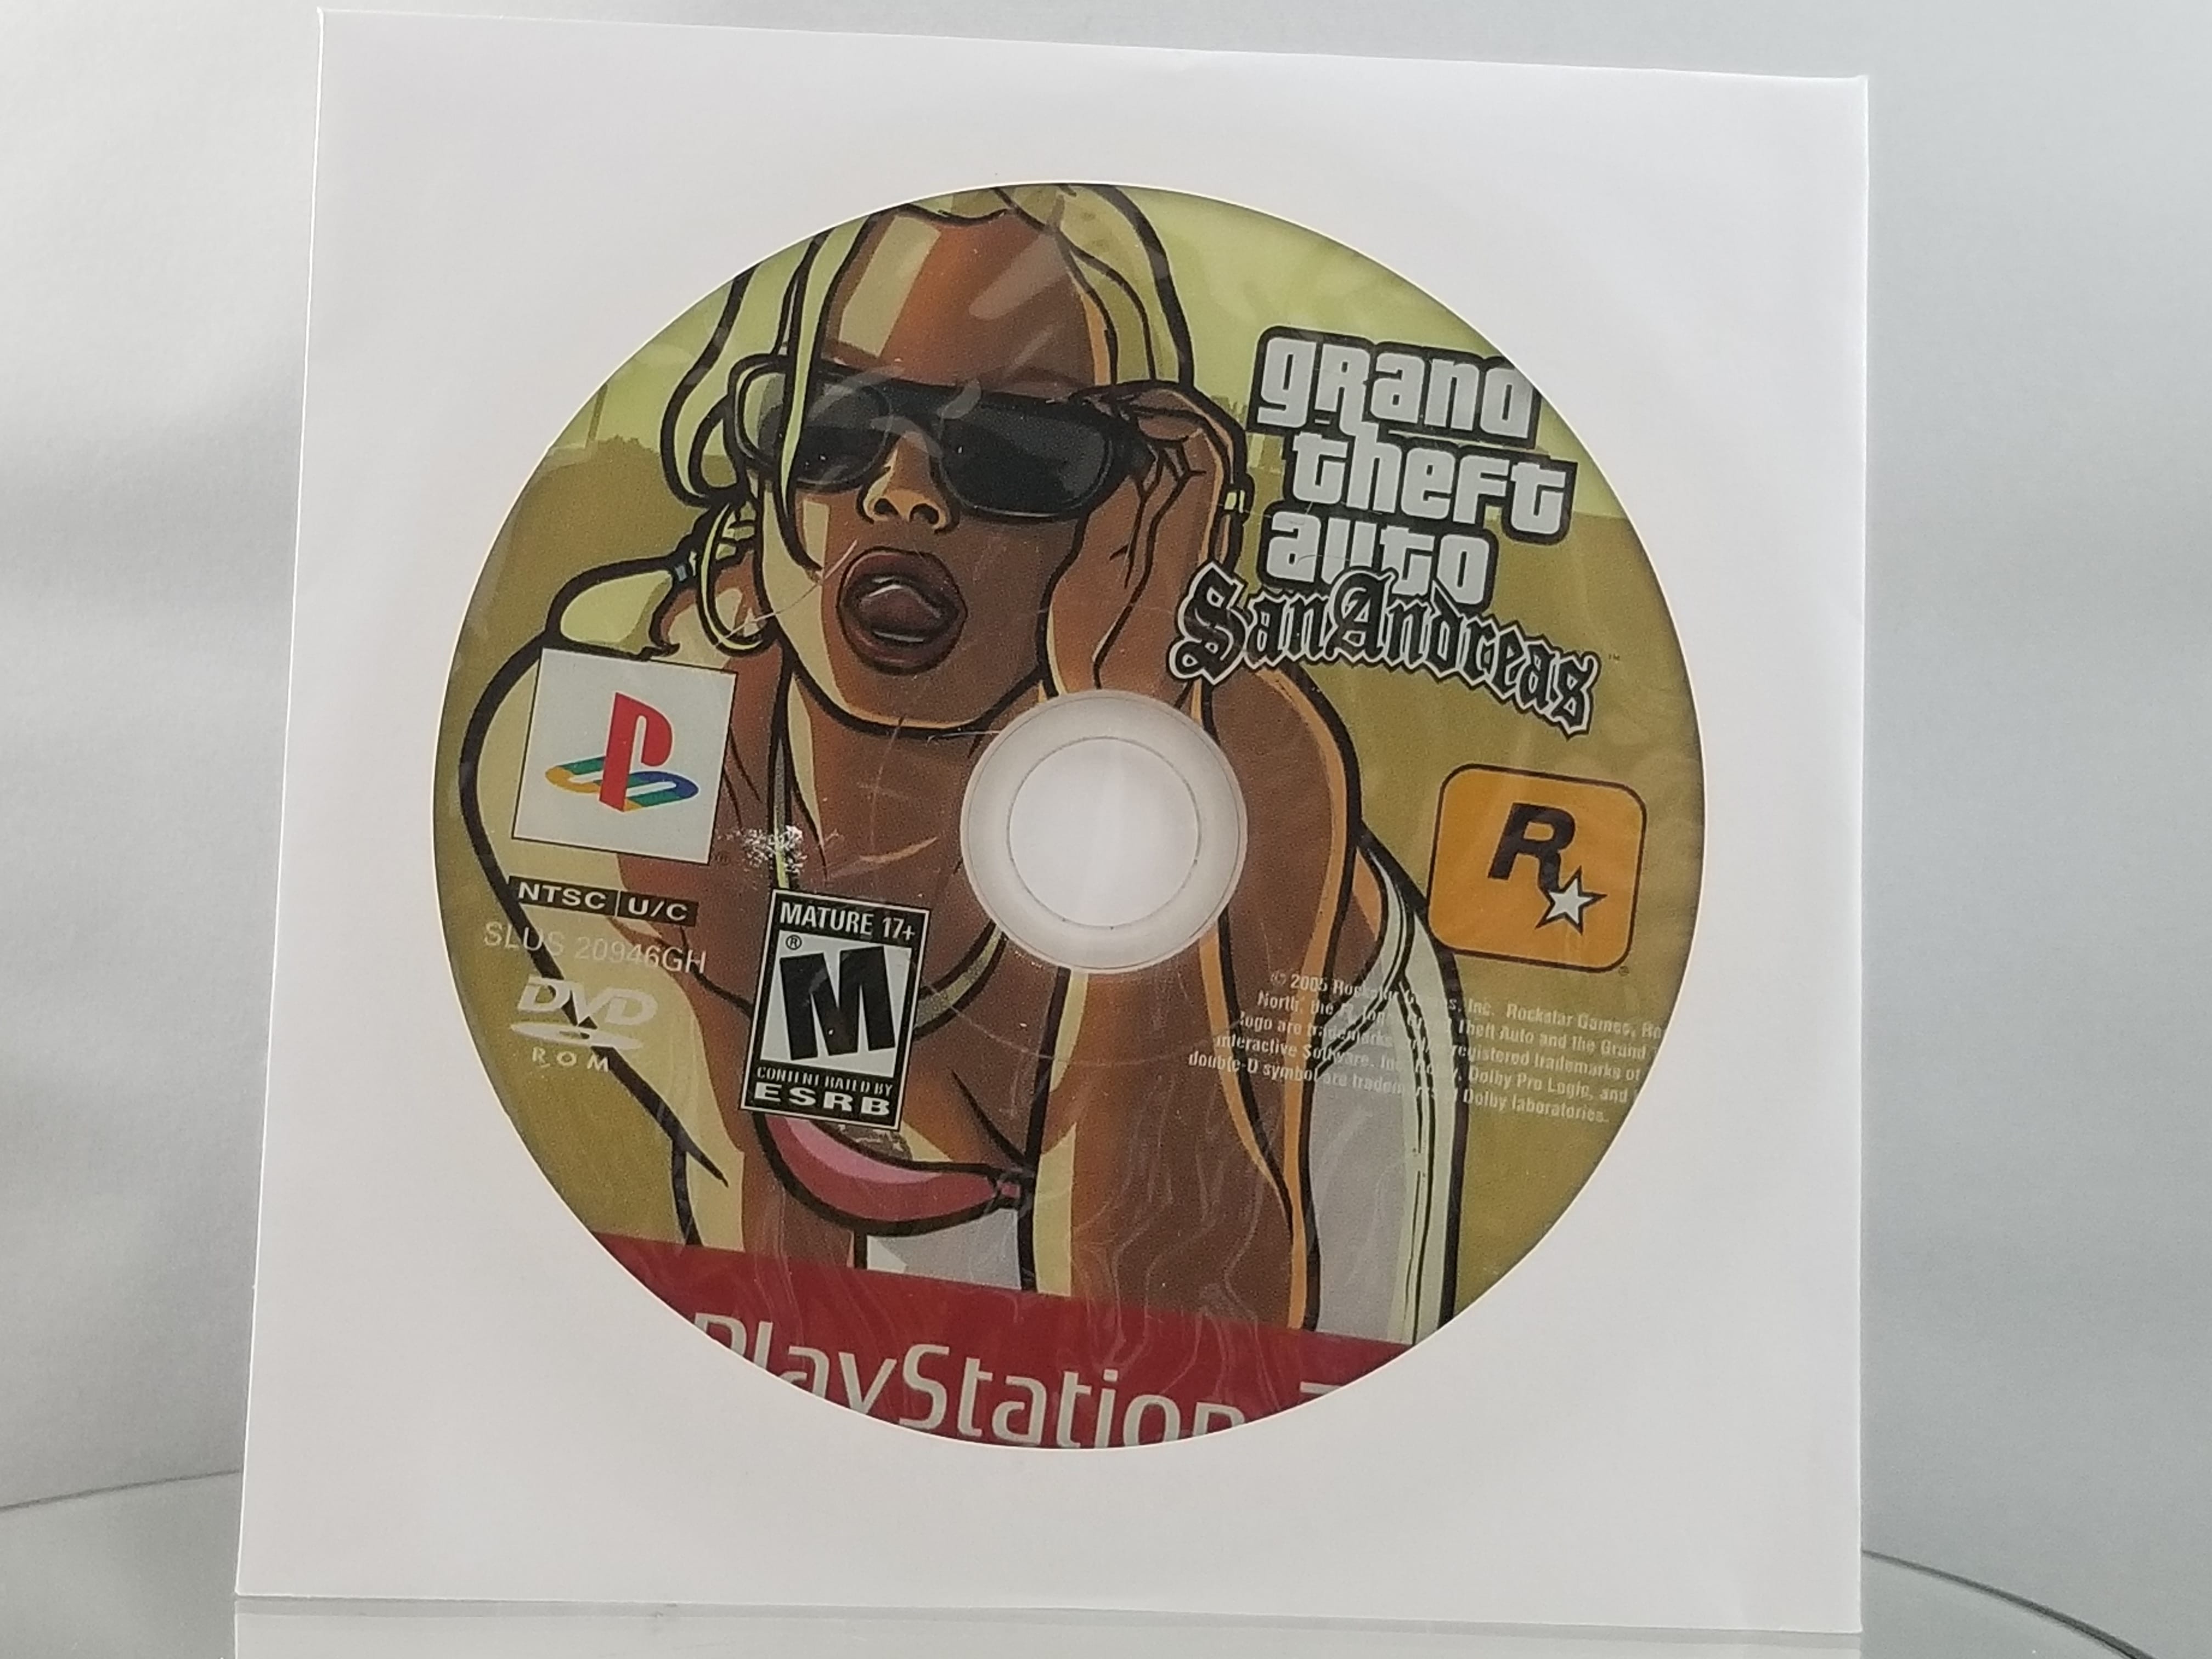 Preços baixos em Sony Playstation 2 Grand Theft Auto: San Andreas